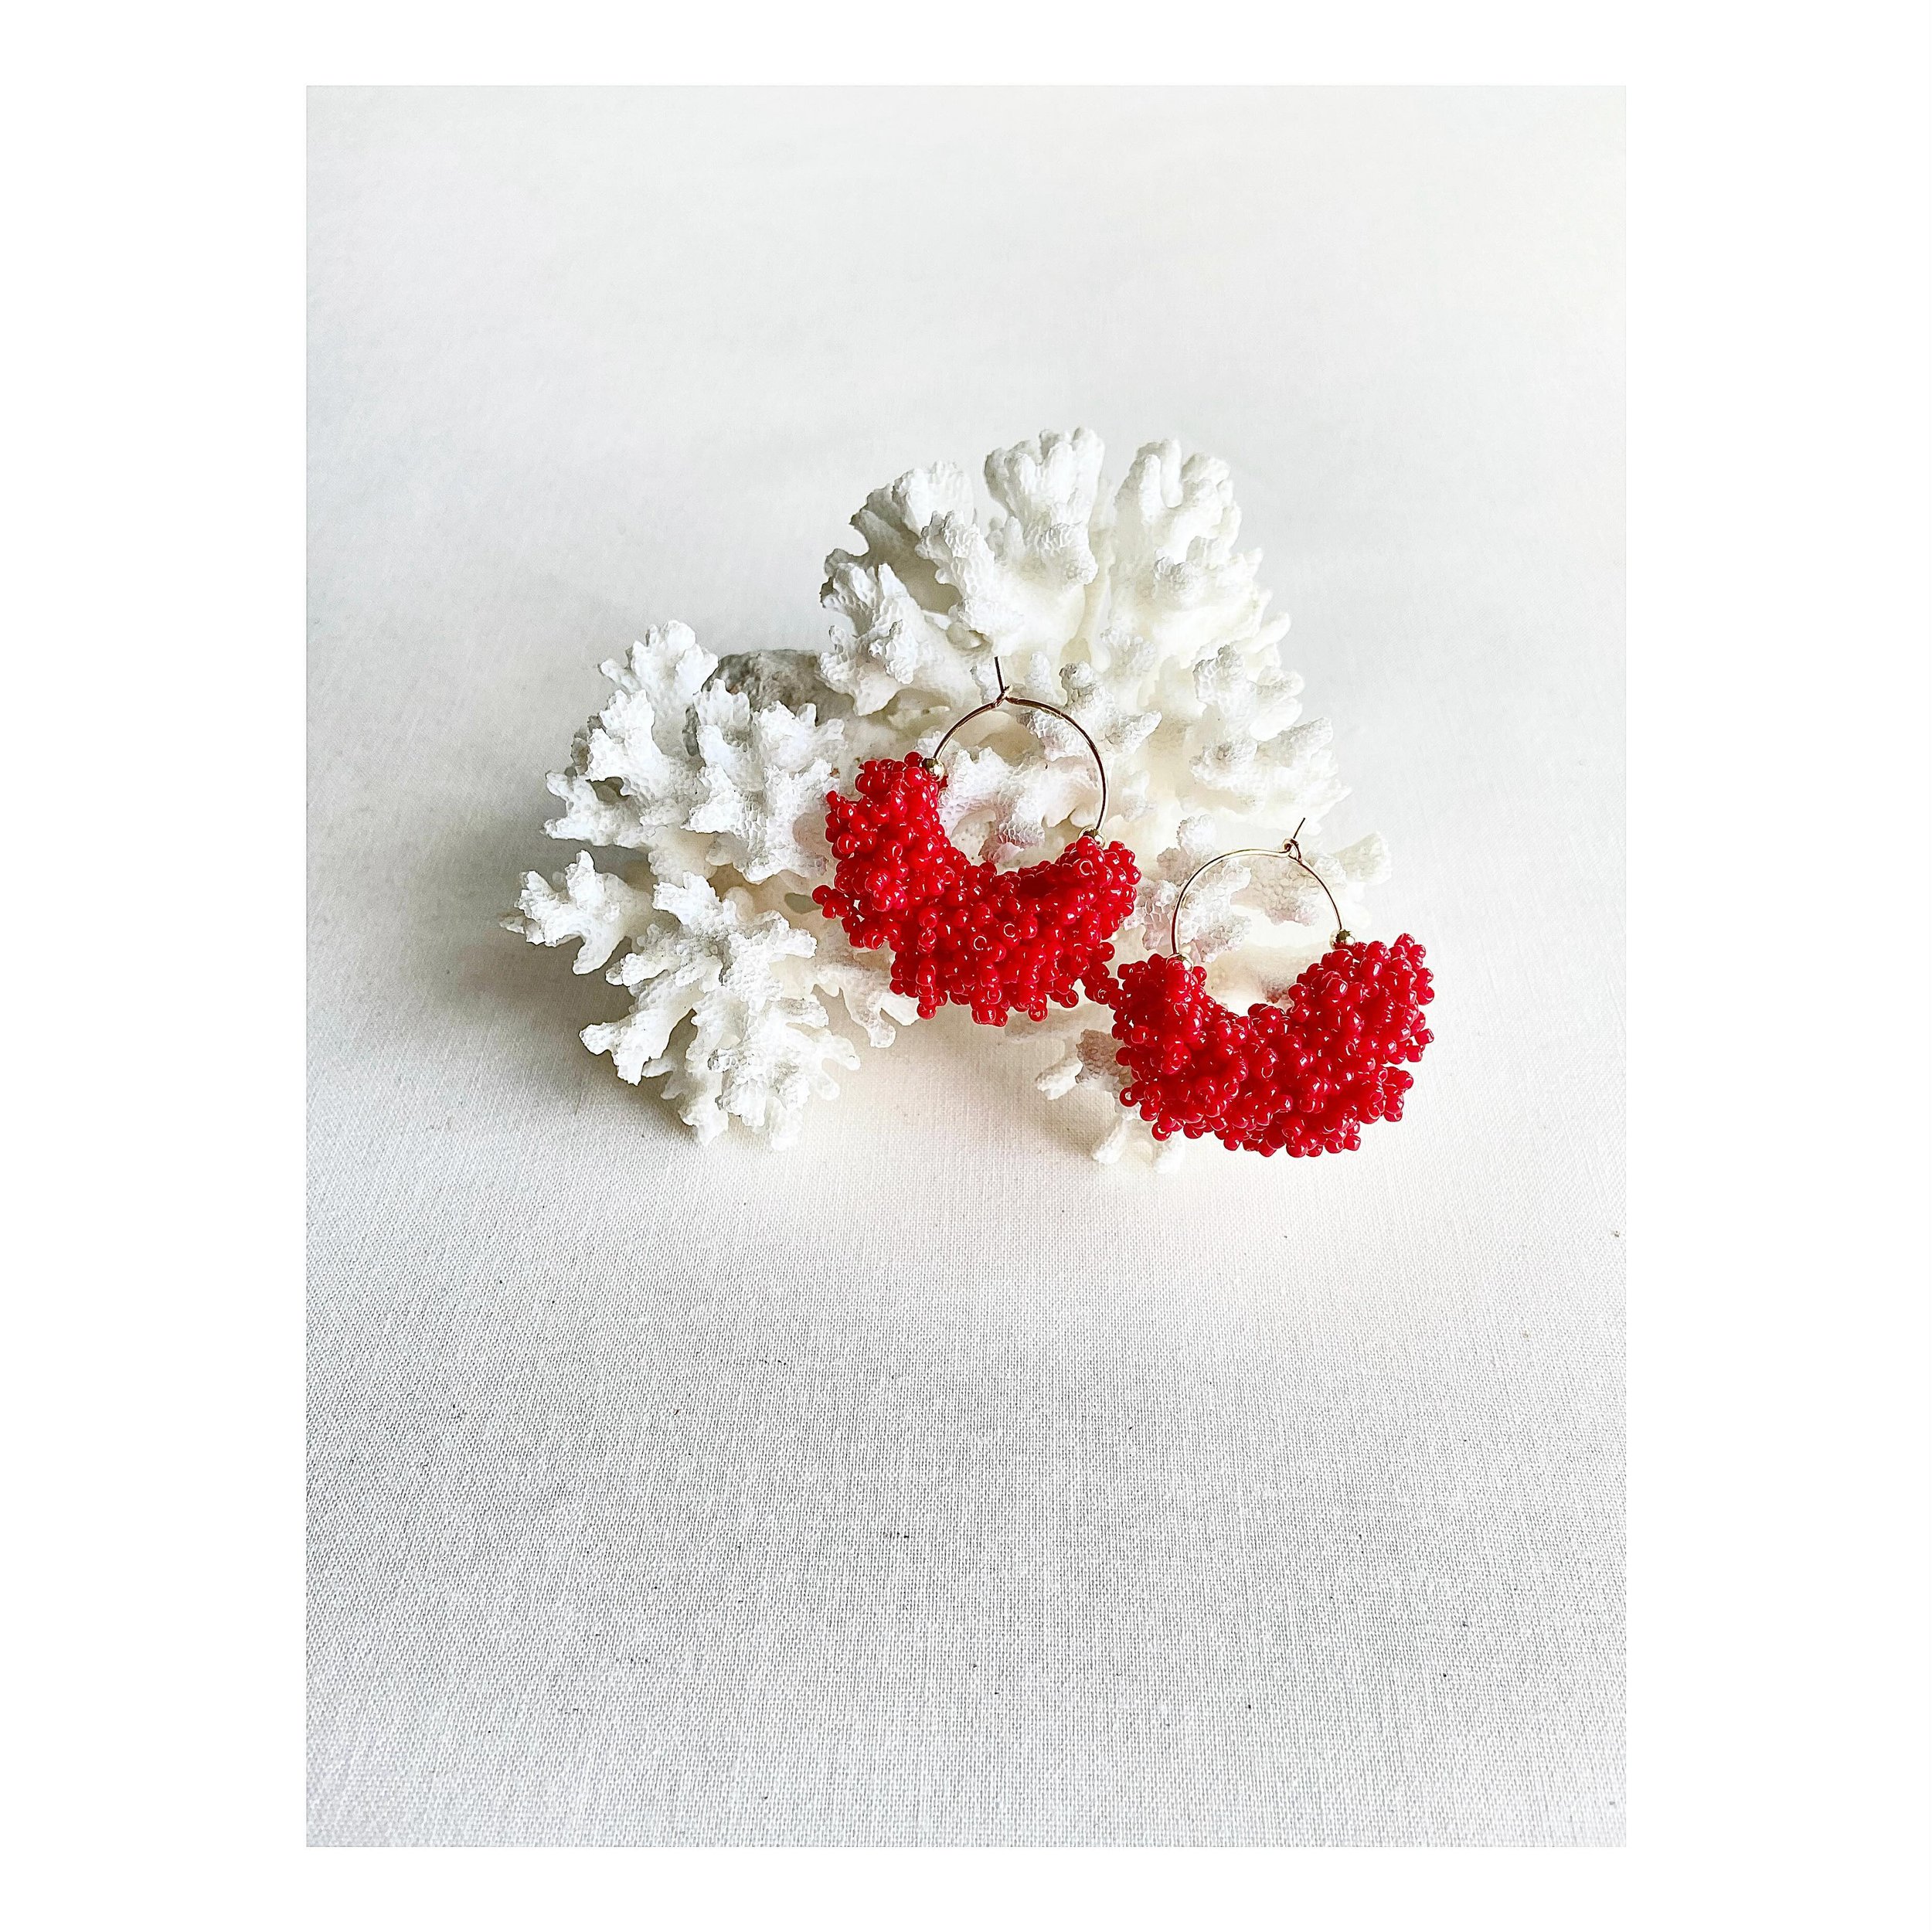 coral like in red.
.
.
.
.
.
.
.
.
.
#handmadebusiness #uniquedesign #hoop #earrings #sugajewelry #sfmade